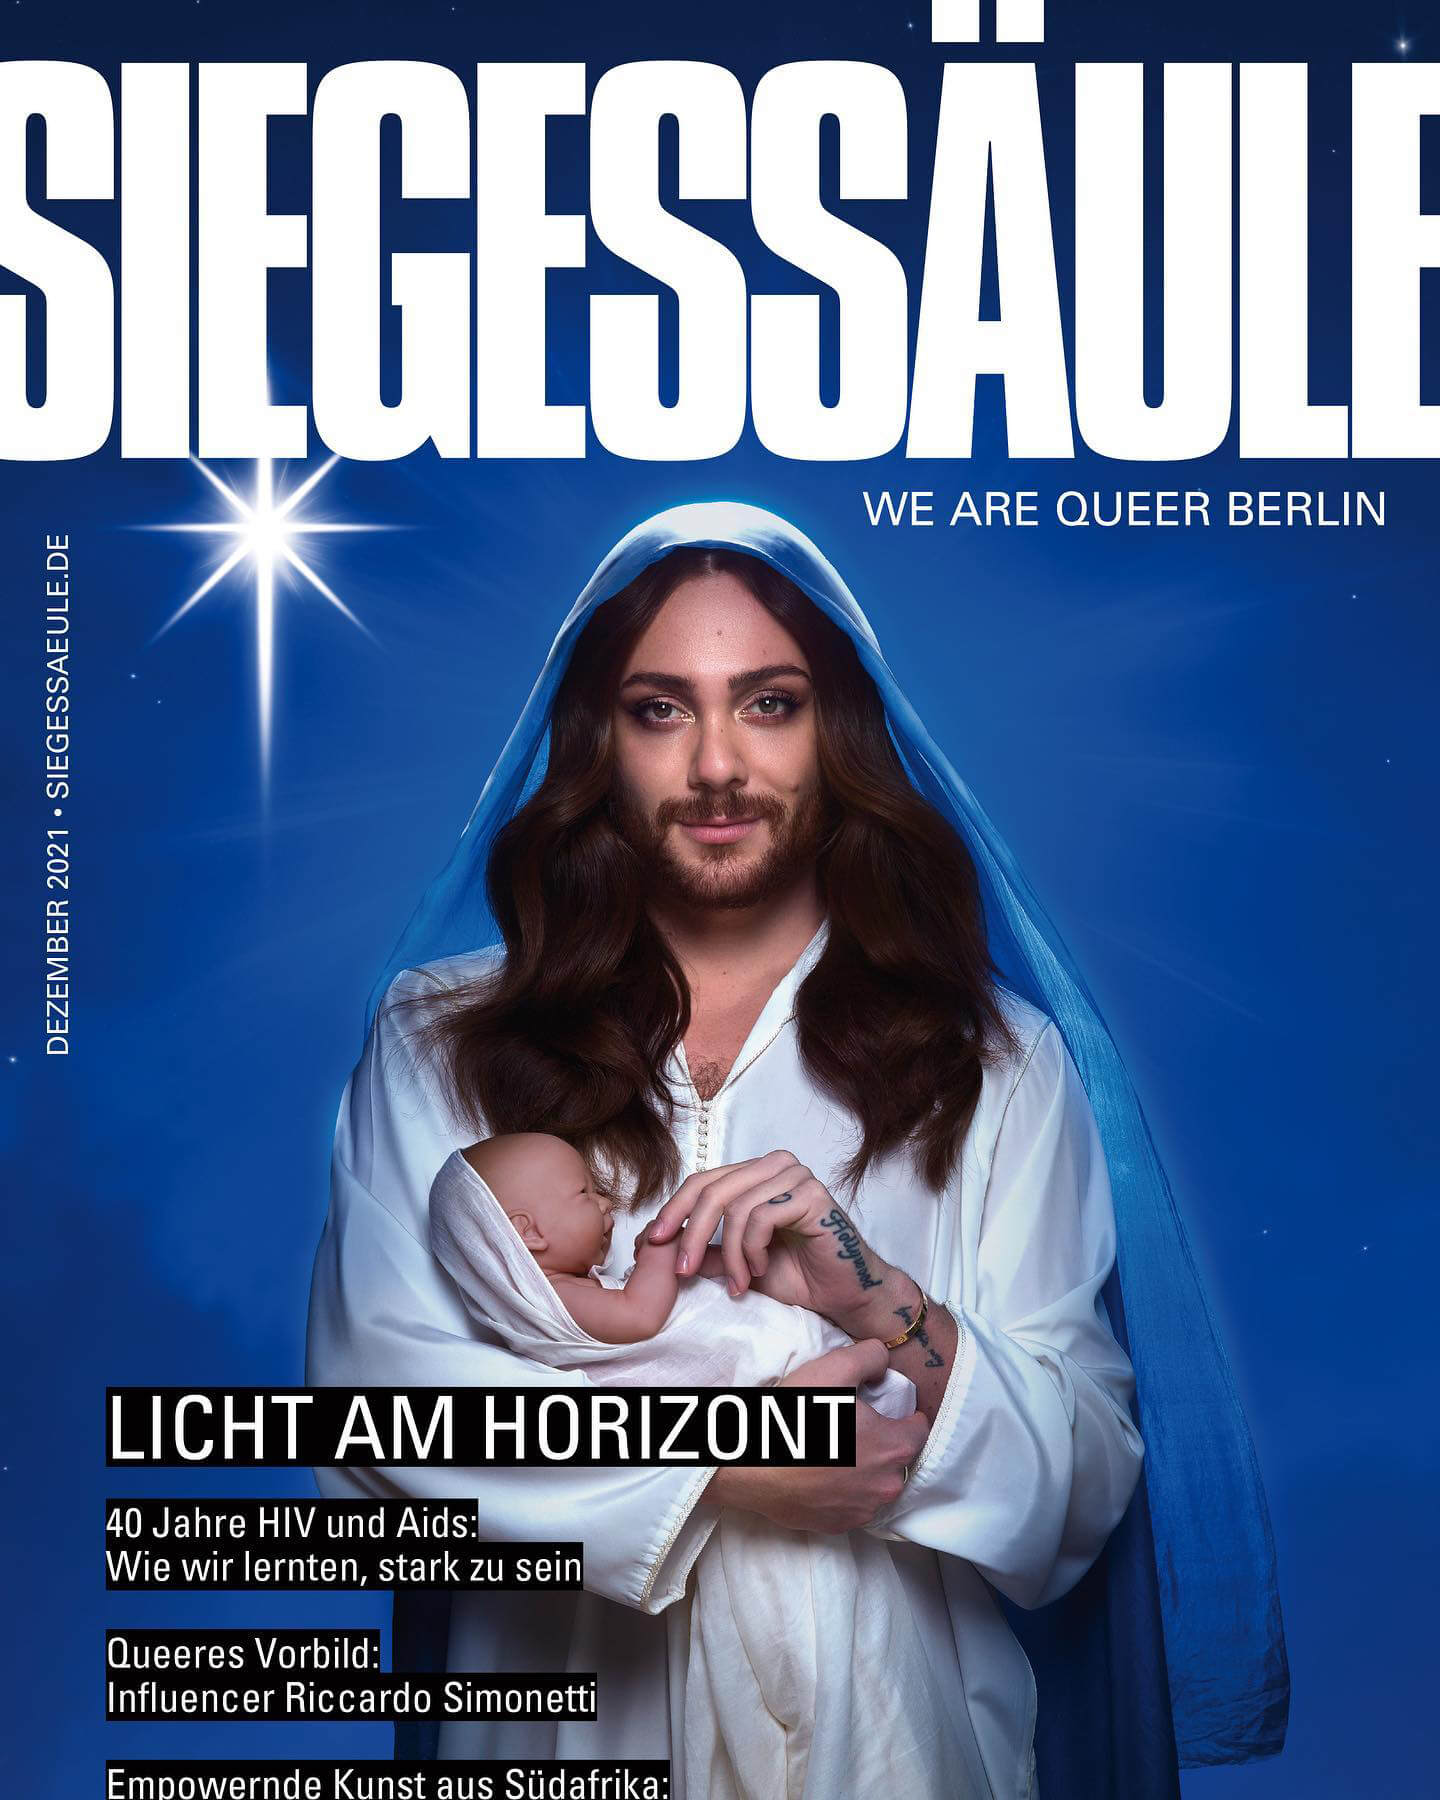 Polémica por una portada de Riccardo Simonetti vestido de Virgen María